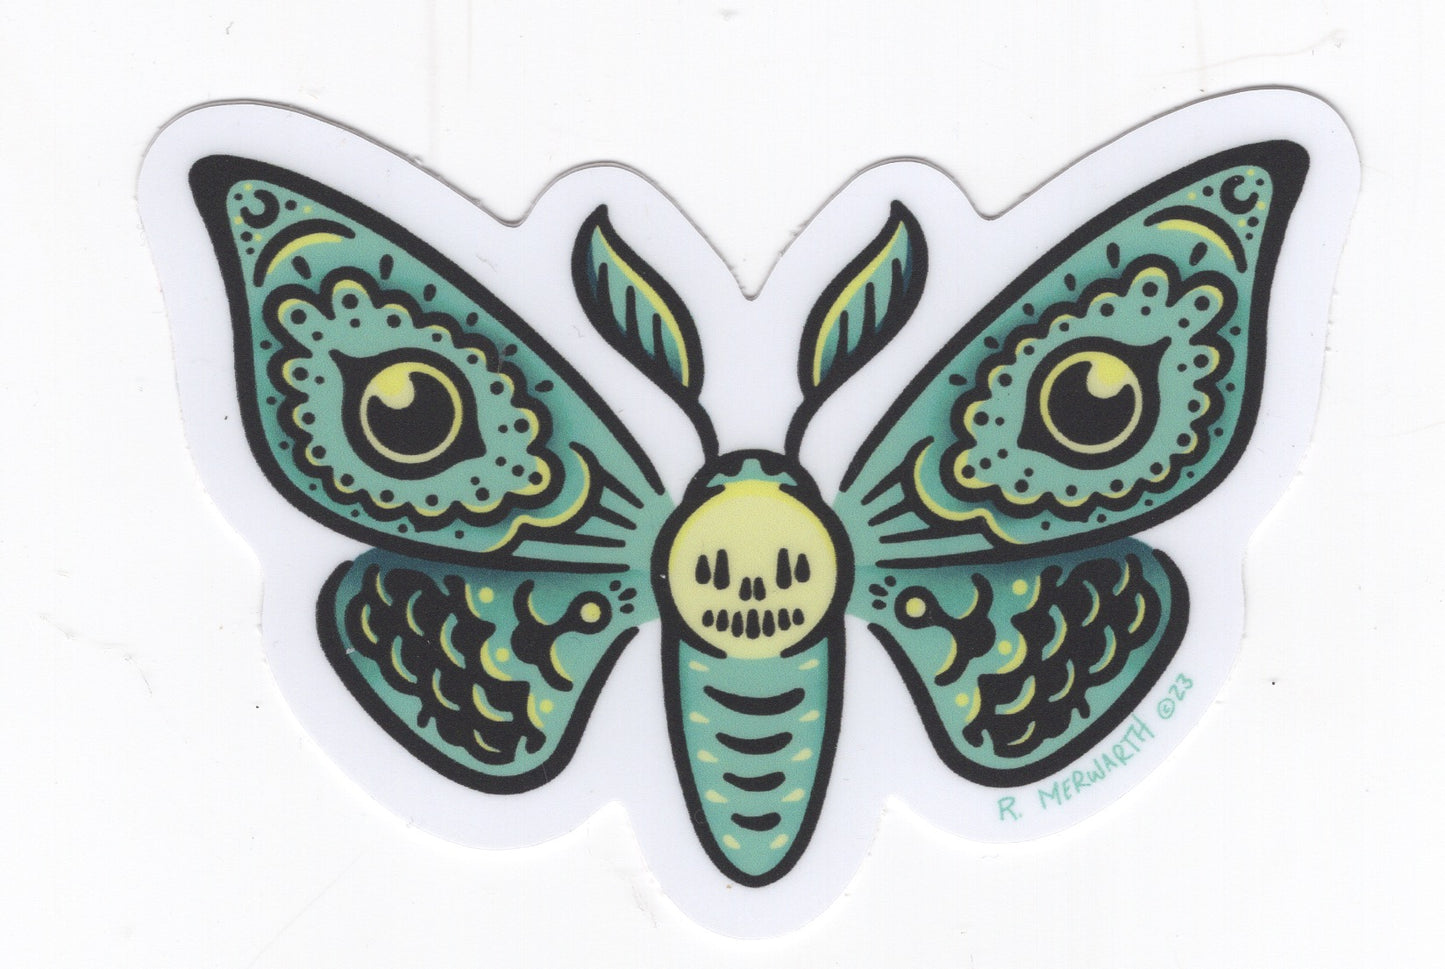 Rich Merwarth- Moth Stickers